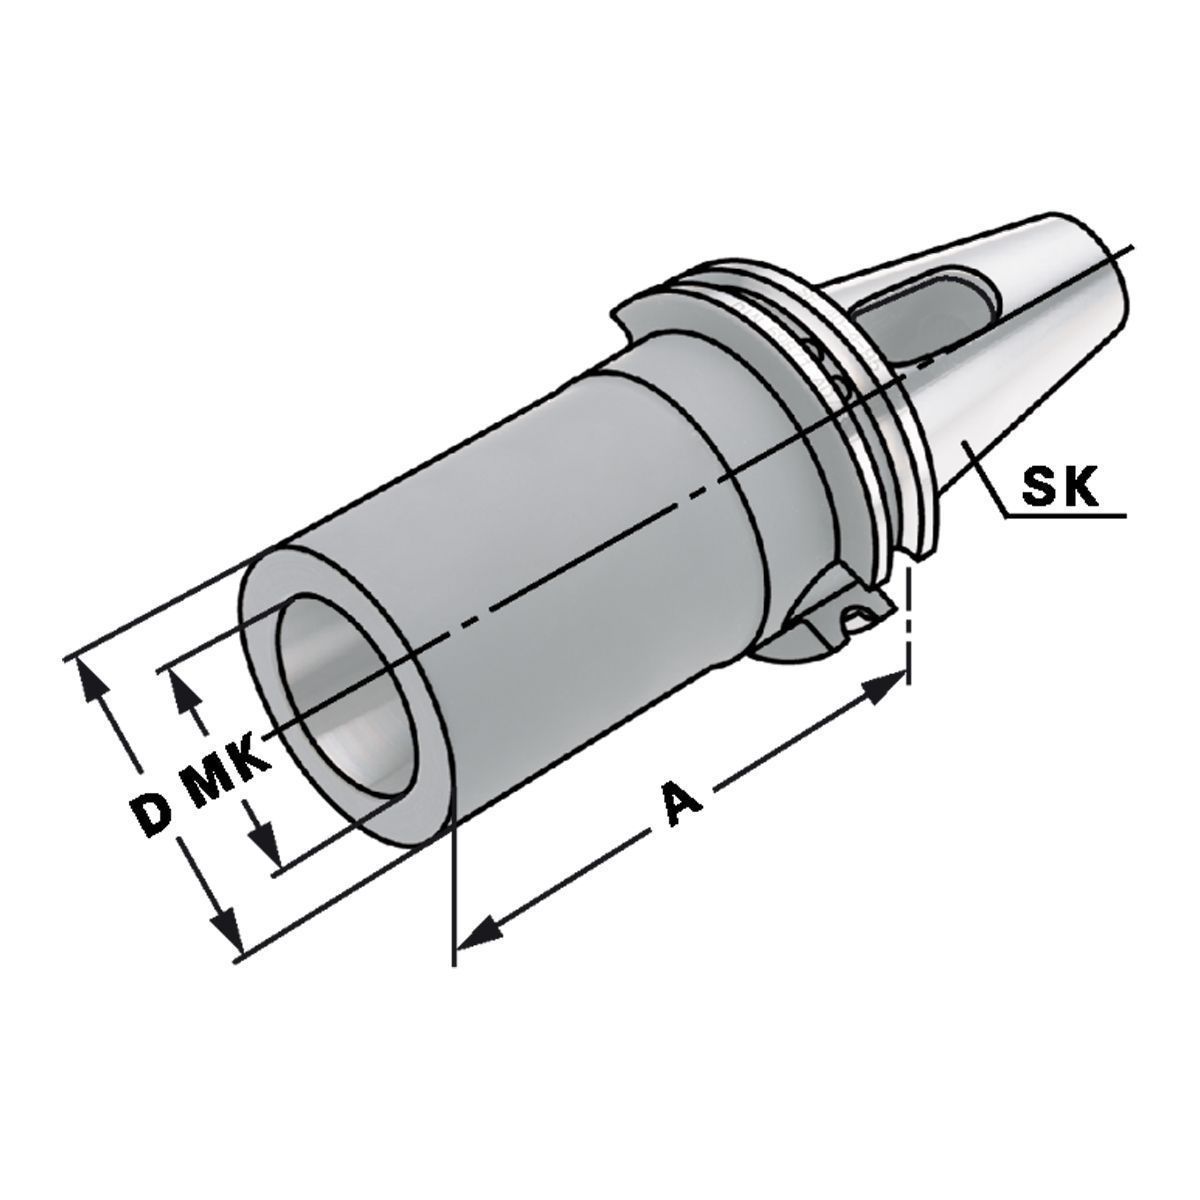 Zwischenhülse SK 50-4-95 für MK mit Austreiblappen DIN 6383